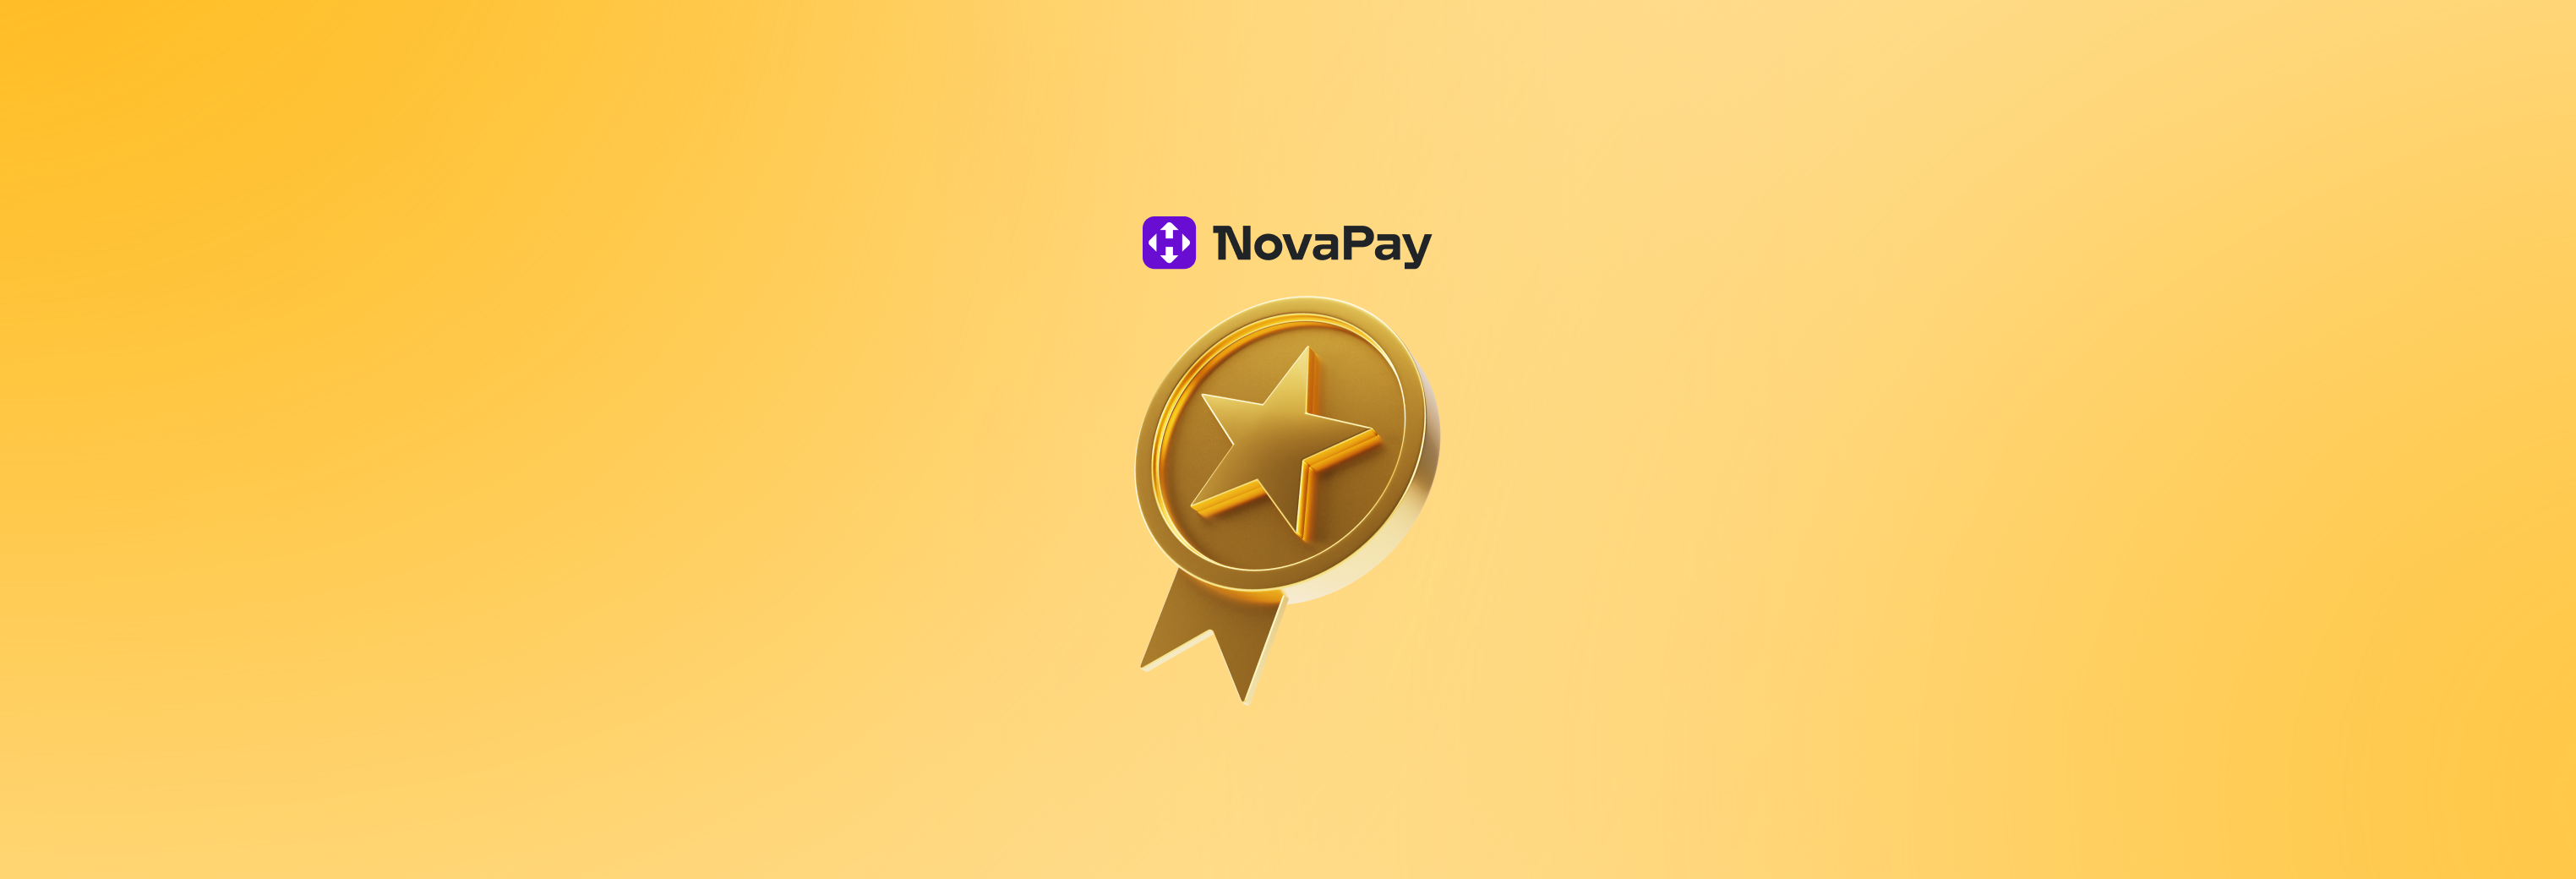 NovaPay – важлива платіжна система України